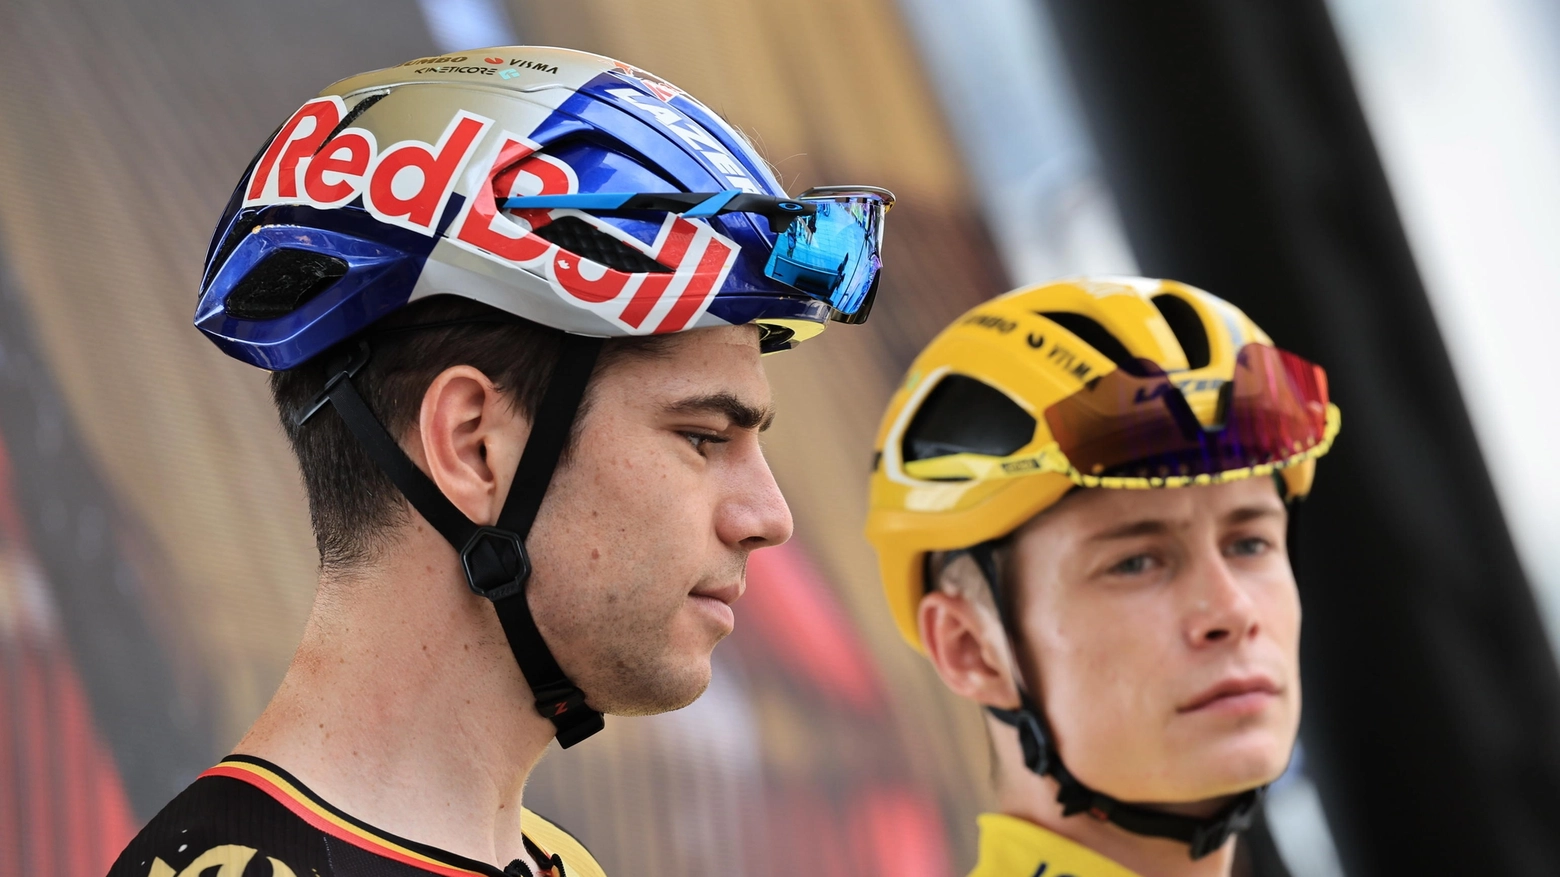 Le cadute dei due alfieri rischiano di stravolgere la stagione dello squadrone olandese, che mantiene il riserbo sulla presenza dei due rispettivamente a Giro d'Italia e Tour de France